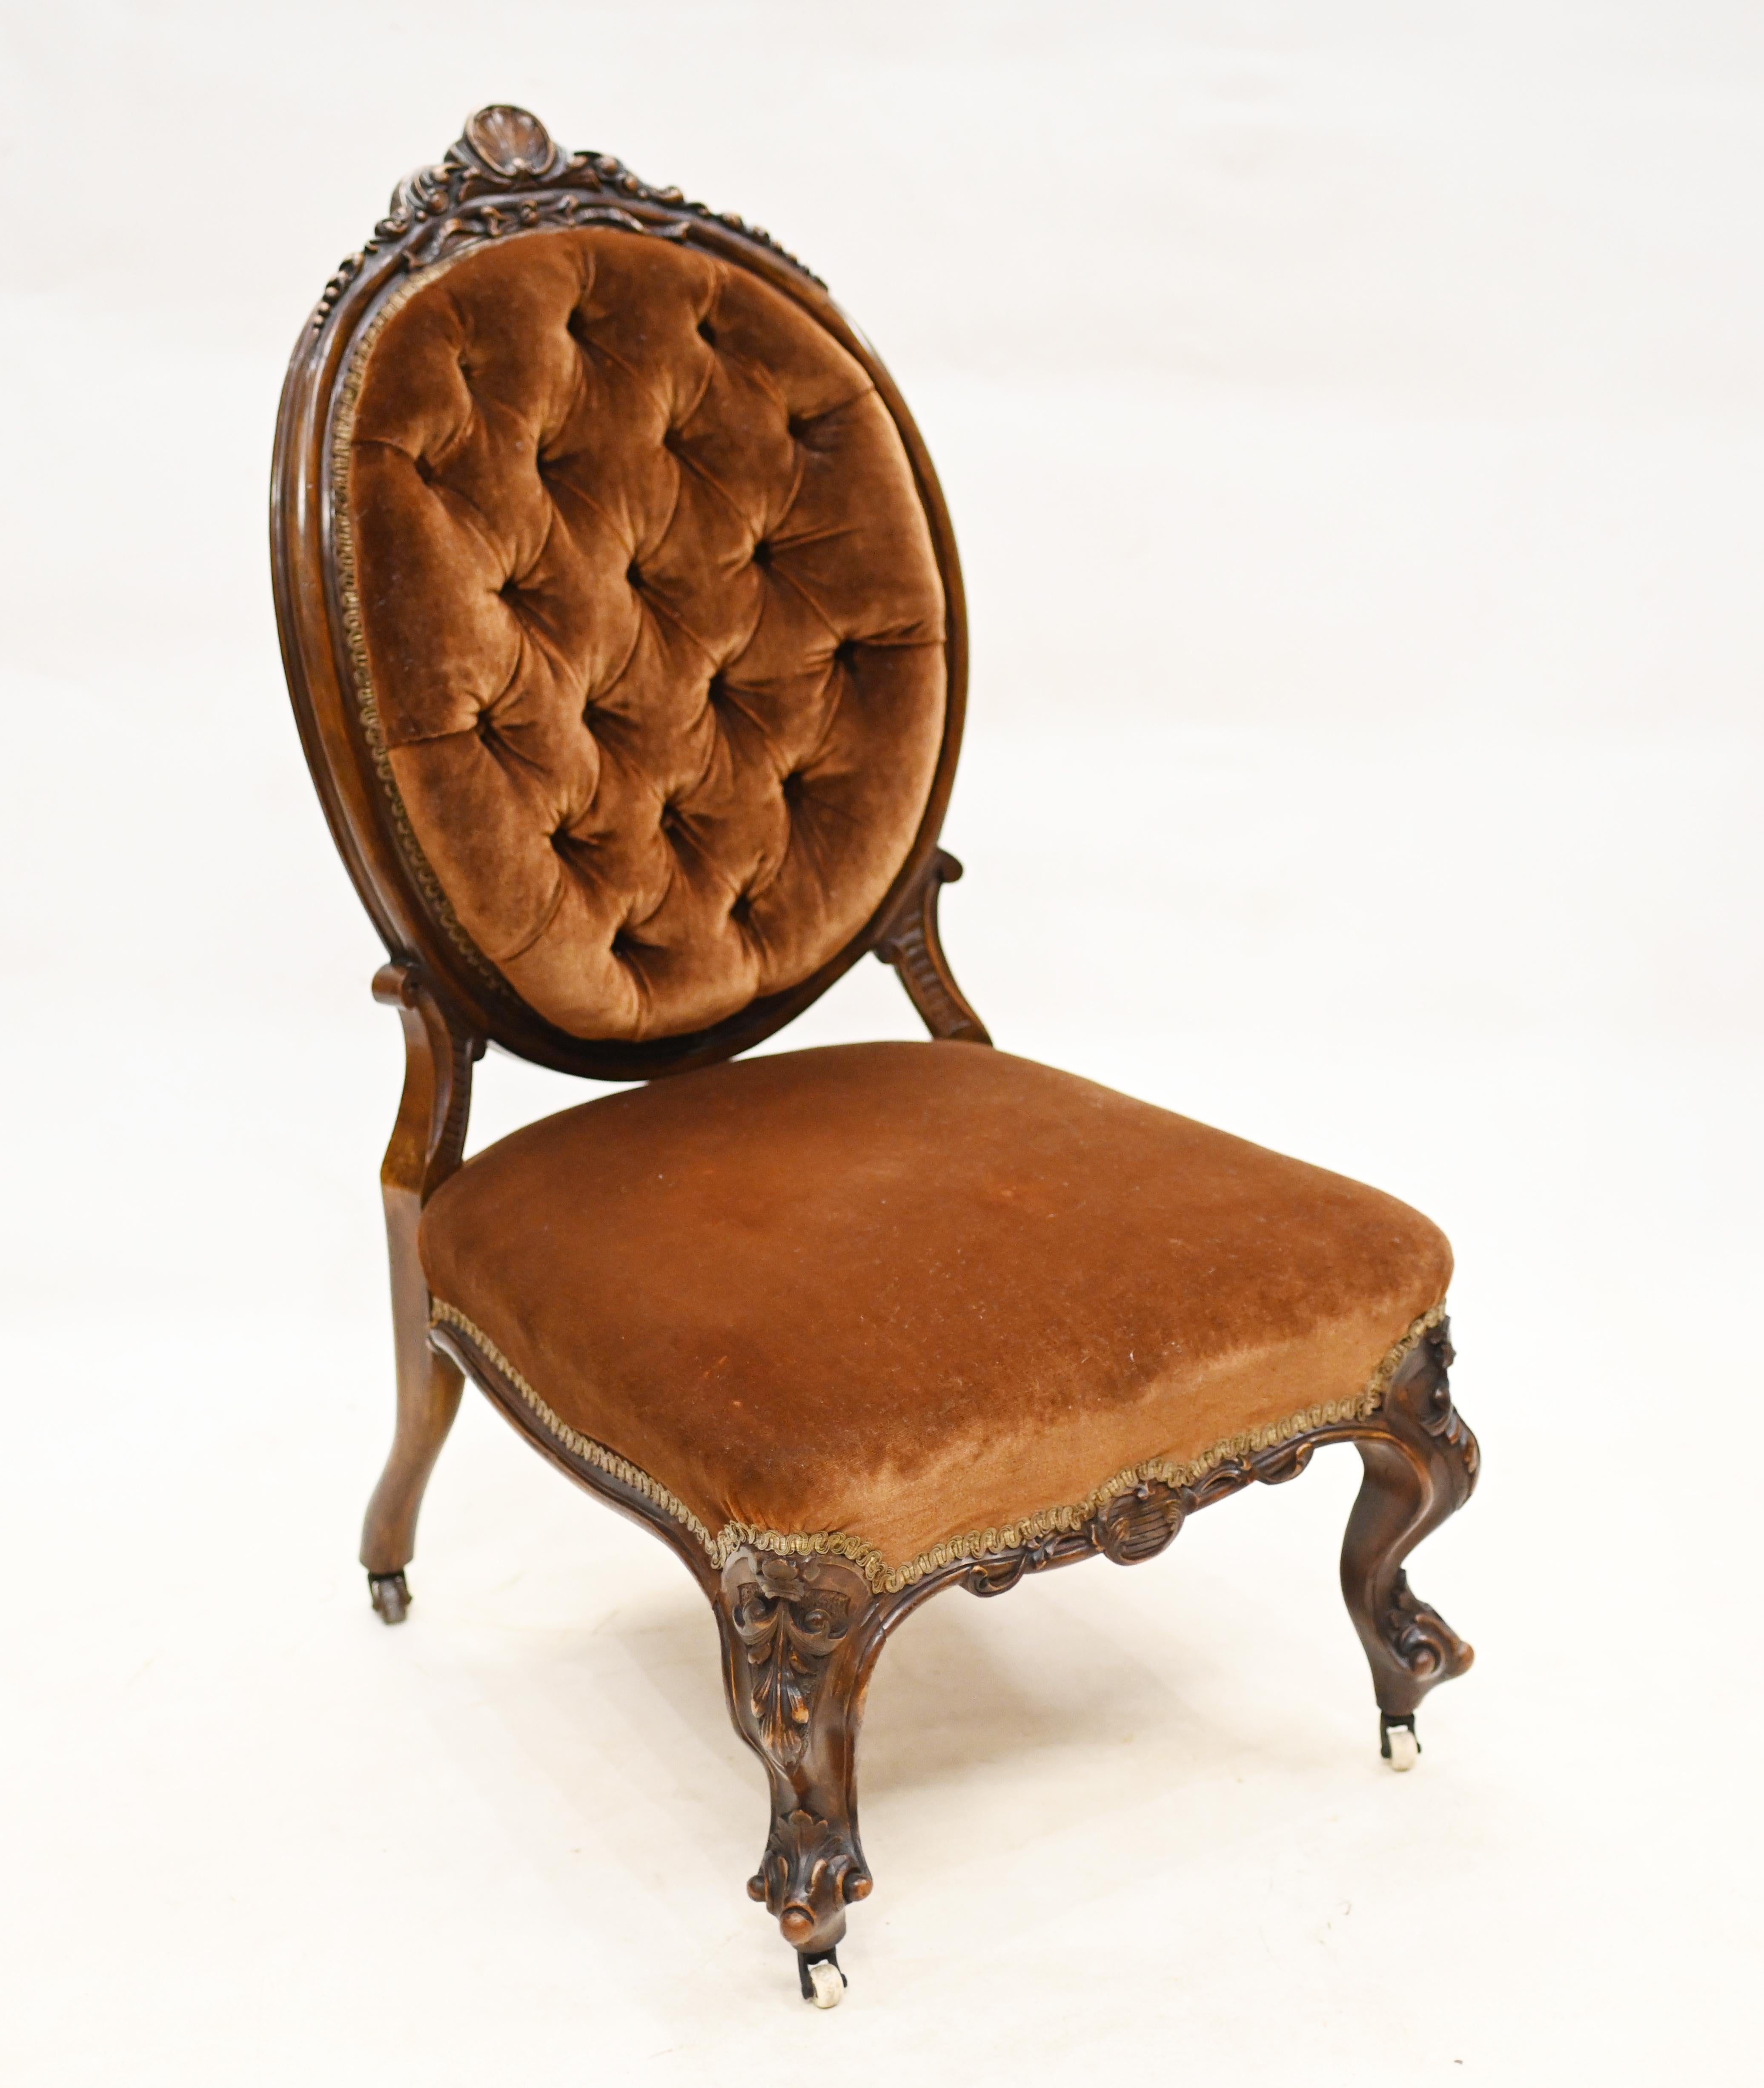 Elegant fauteuil d'allaitement victorien en acajou
Peut également servir de chaise de salon ou de salon de coiffure
Cette pièce de collection date de 1860.
L'assise basse indique qu'il s'agit à l'origine d'un fauteuil d'allaitement.
Offert en très